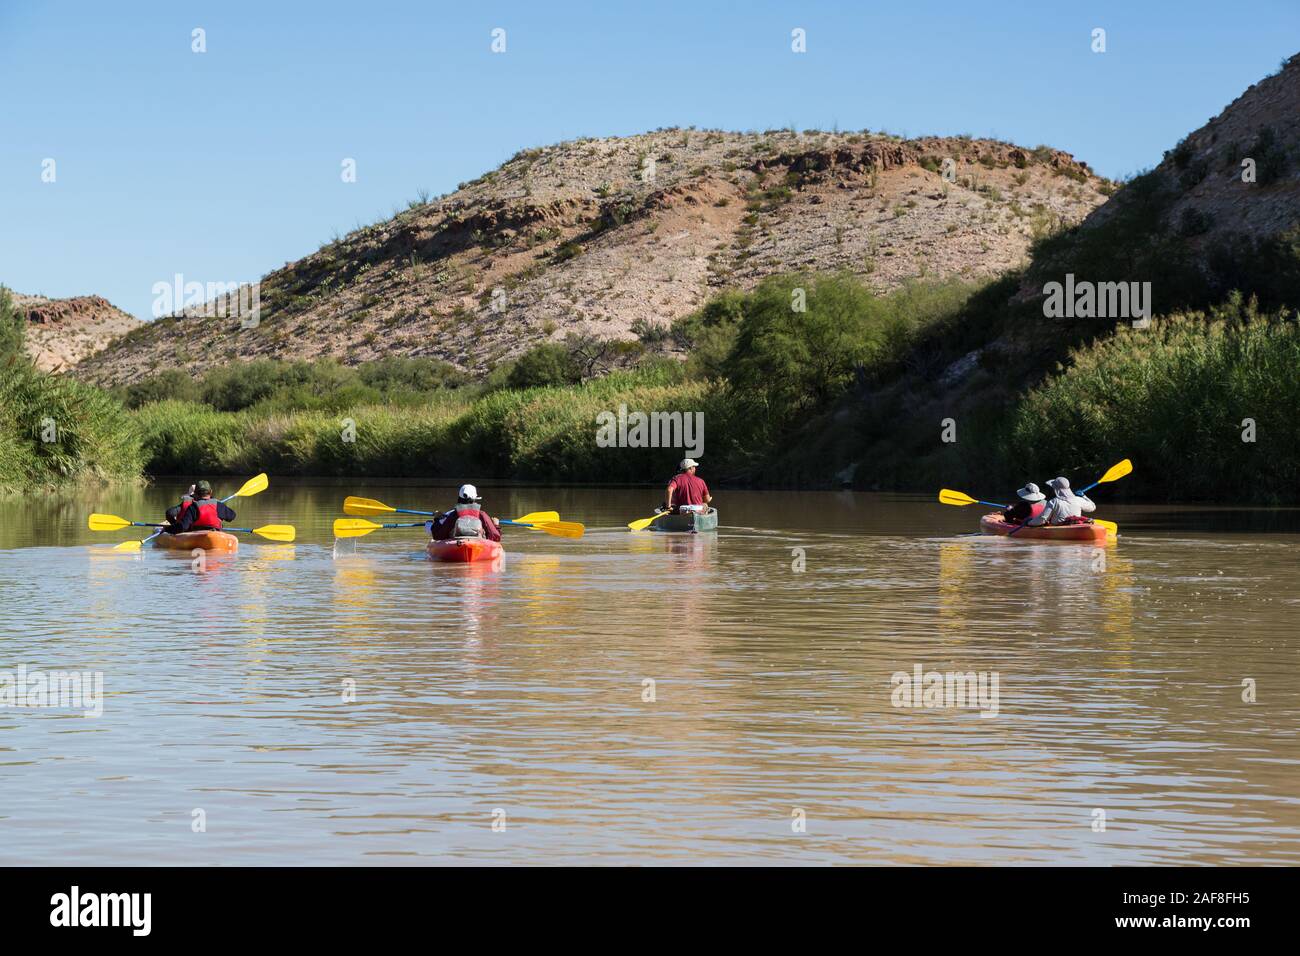 Kanu auf dem Rio Grande Fluss, fließt nordöstlich in der Nähe von Rio Grande Village, Big Bend National Park, Texas. Invasive Carrizo Zuckerrohr an Banken. Stockfoto